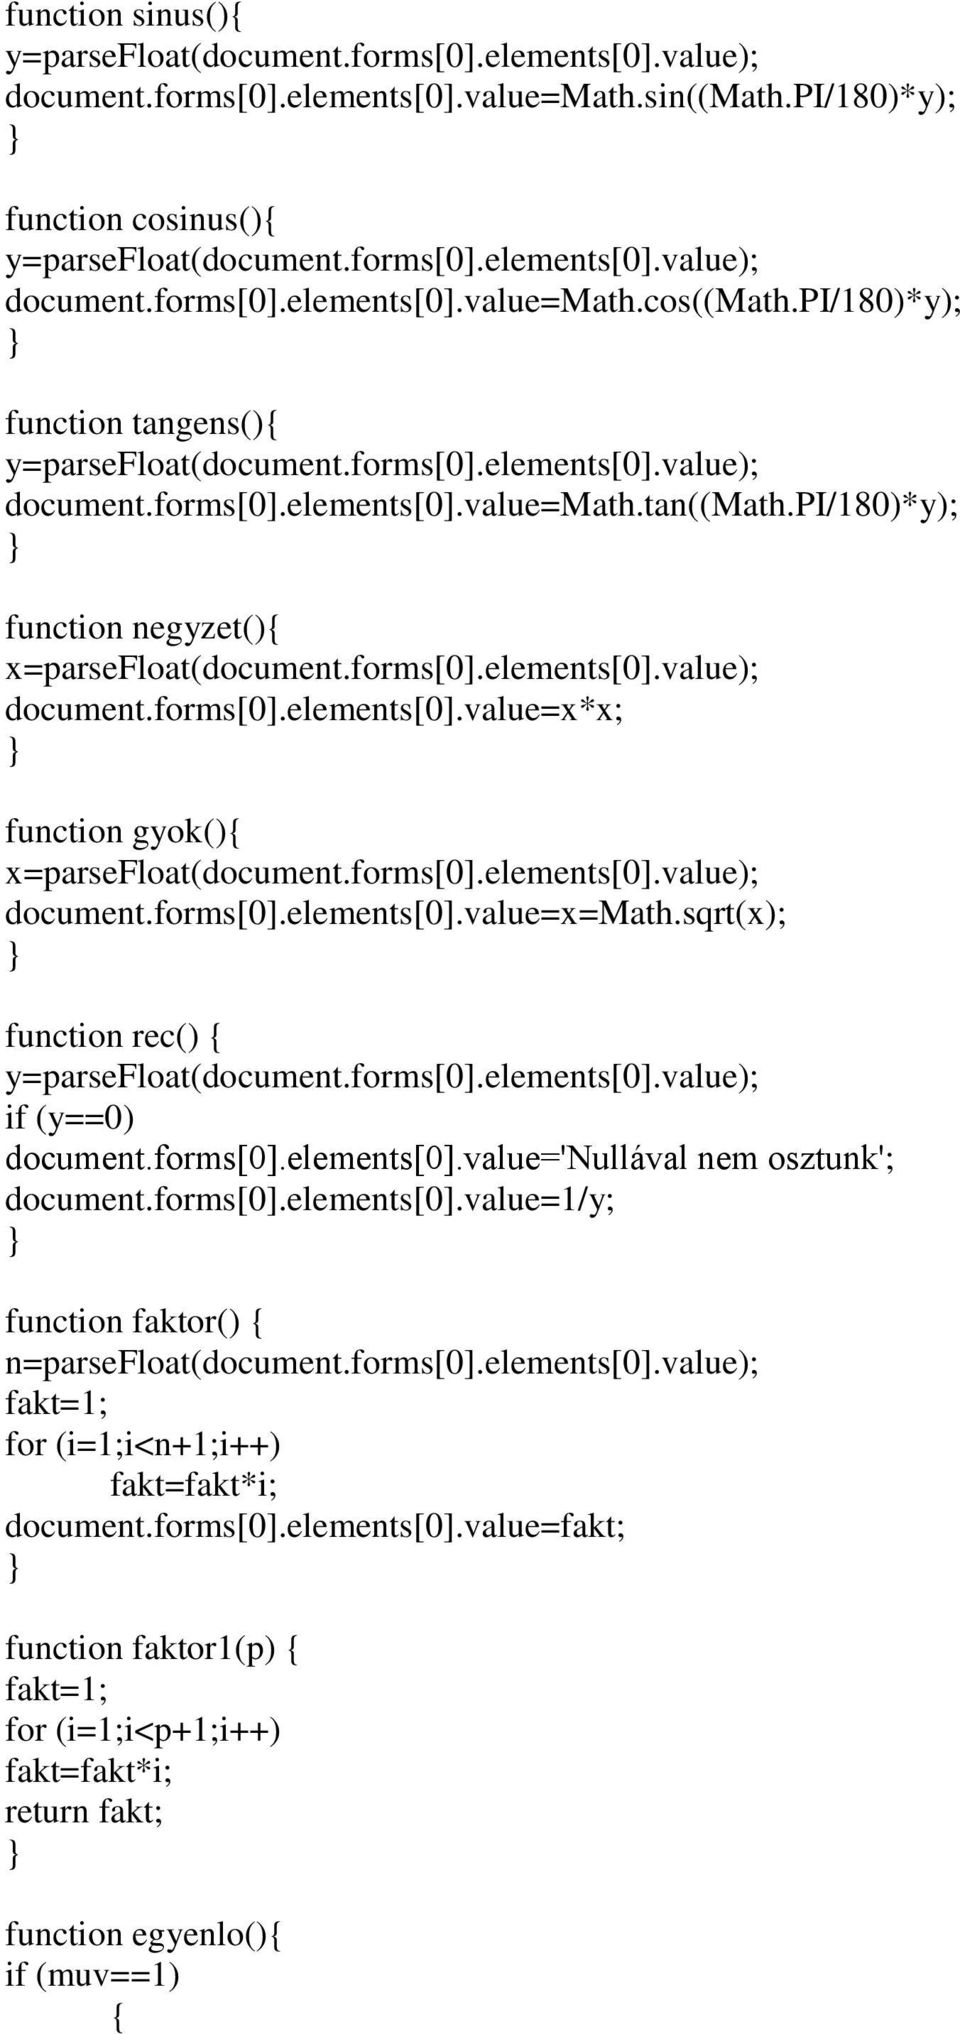 sqrt(x); function rec() if (y==0) document.forms[0].elements[0].value='nullával nem osztunk'; document.forms[0].elements[0].value=1/y; function faktor() n=parsefloat(document.forms[0].elements[0].value); fakt=1; for (i=1;i<n+1;i++) fakt=fakt*i; document.